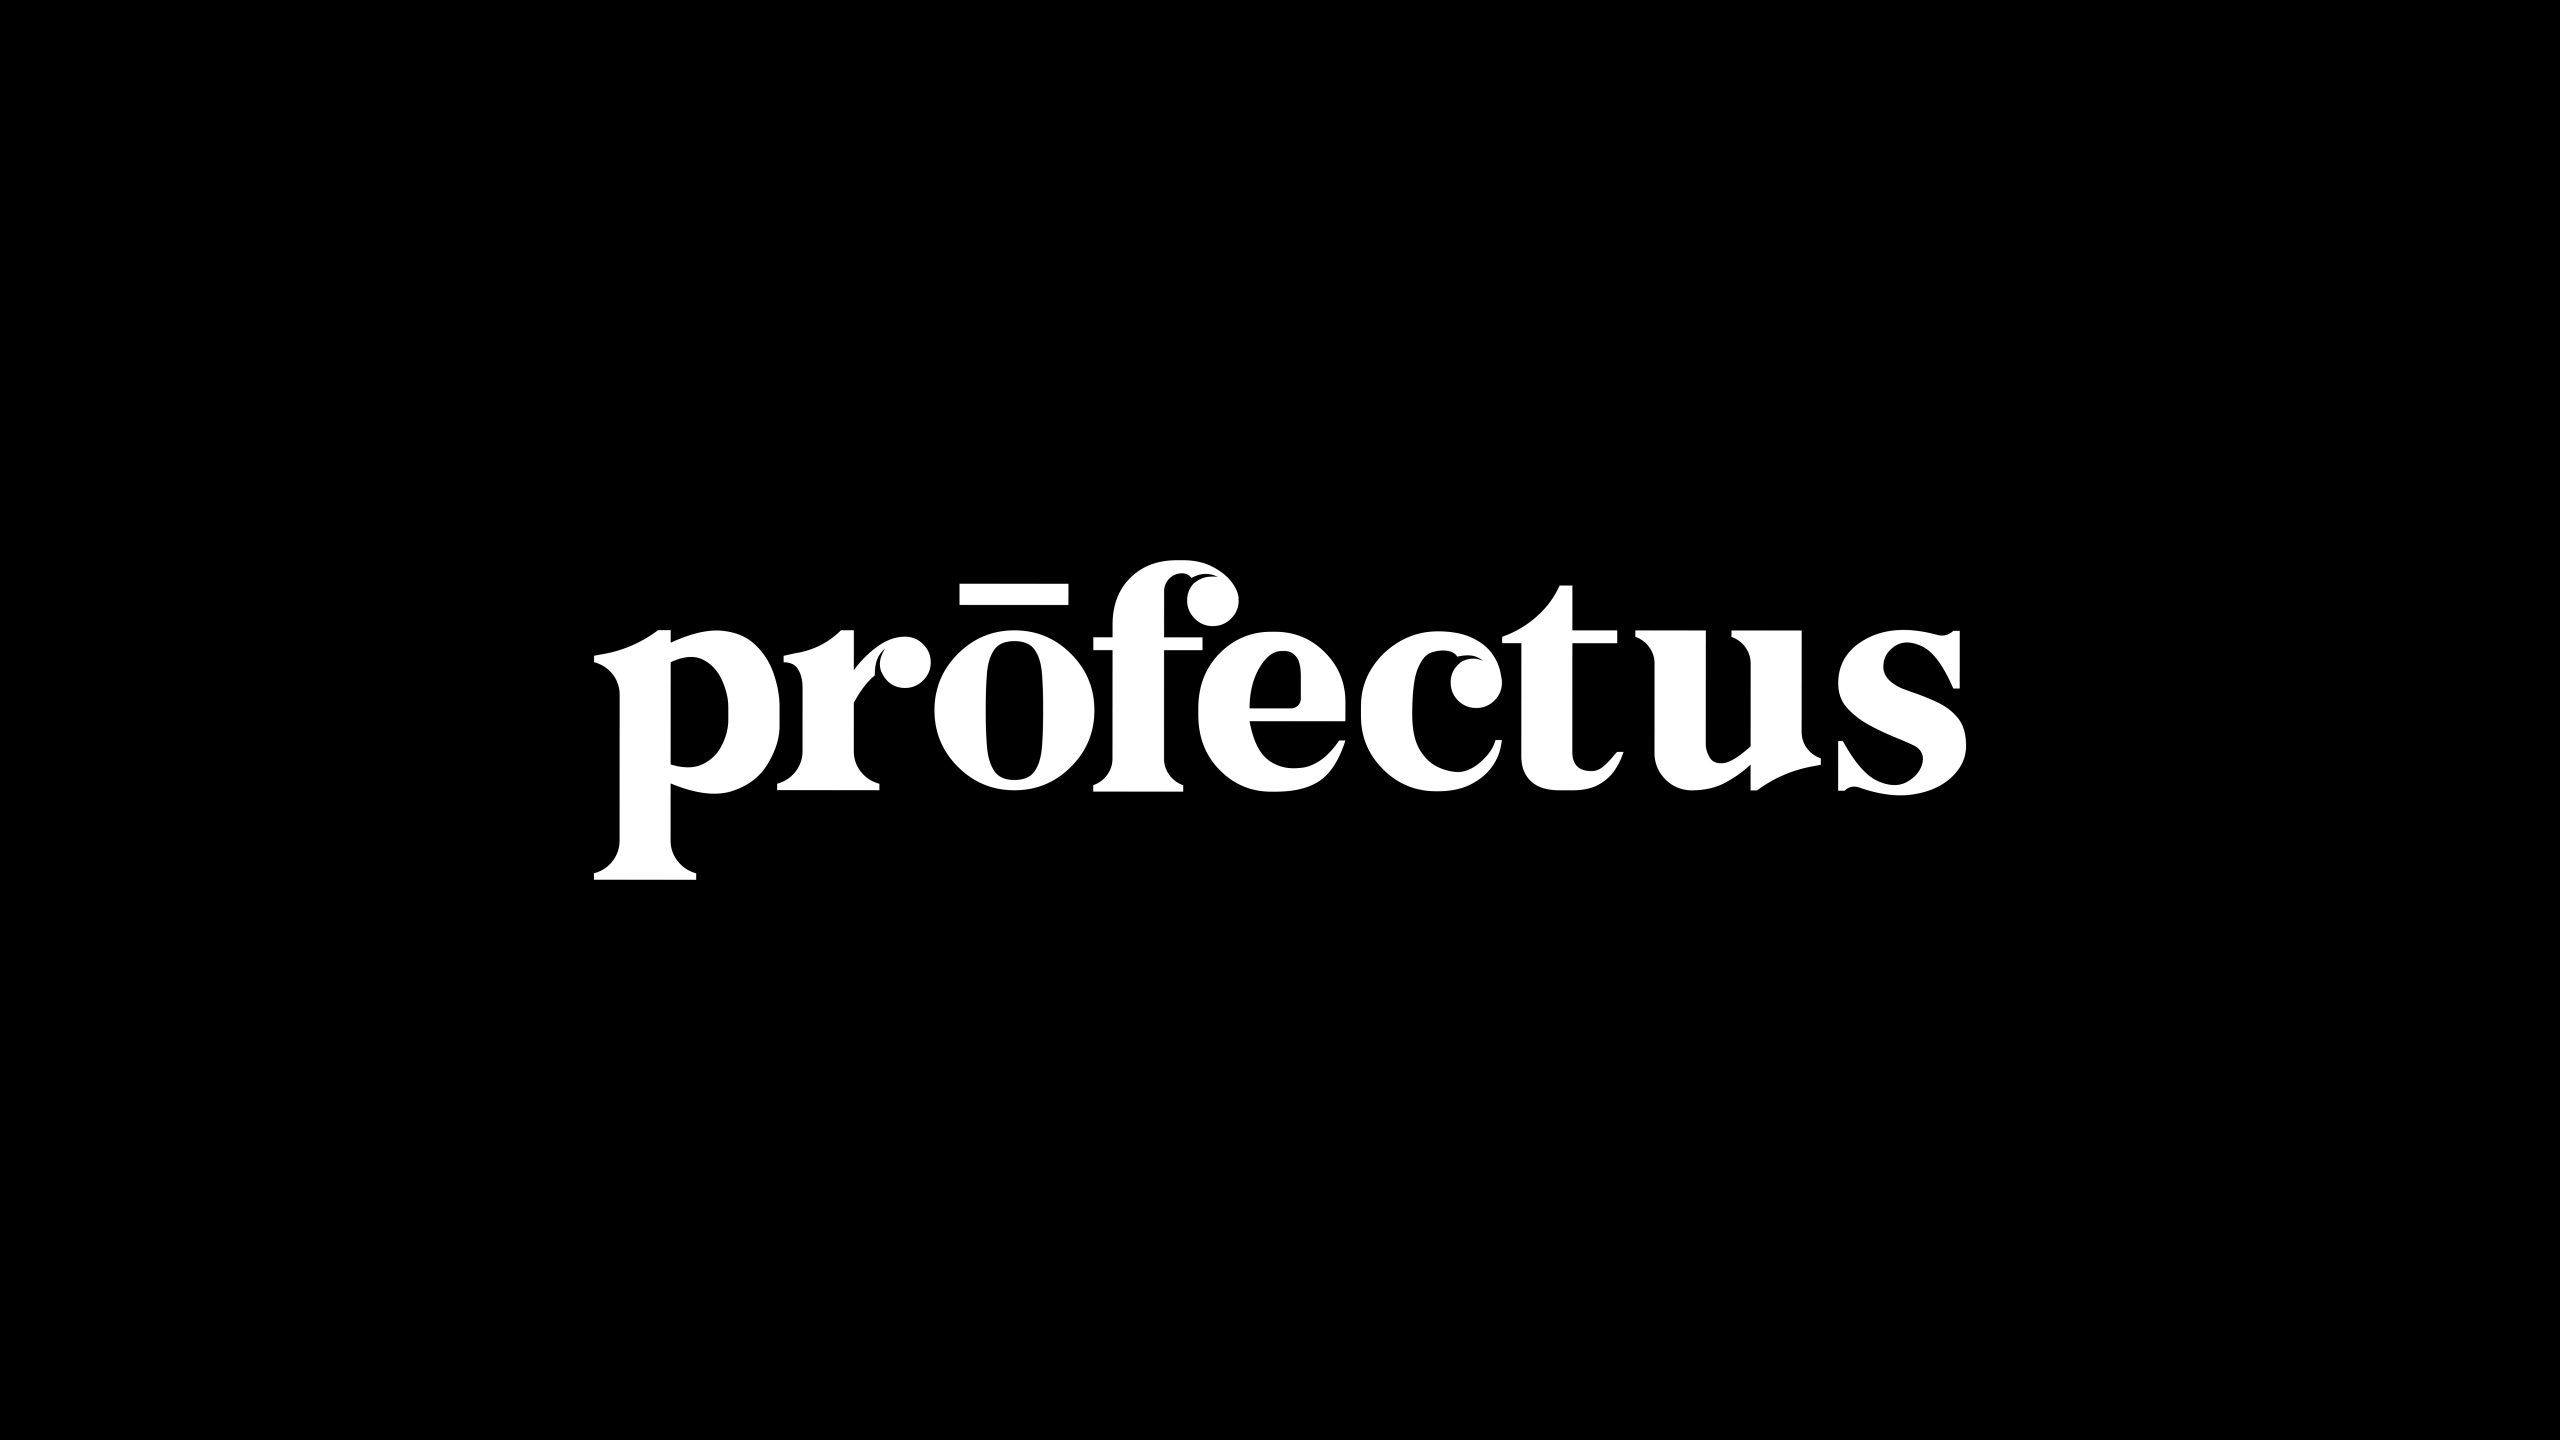 Prōfectus. O novo podcast com convidados de renome e de várias áreas que promete incentivar a leitura